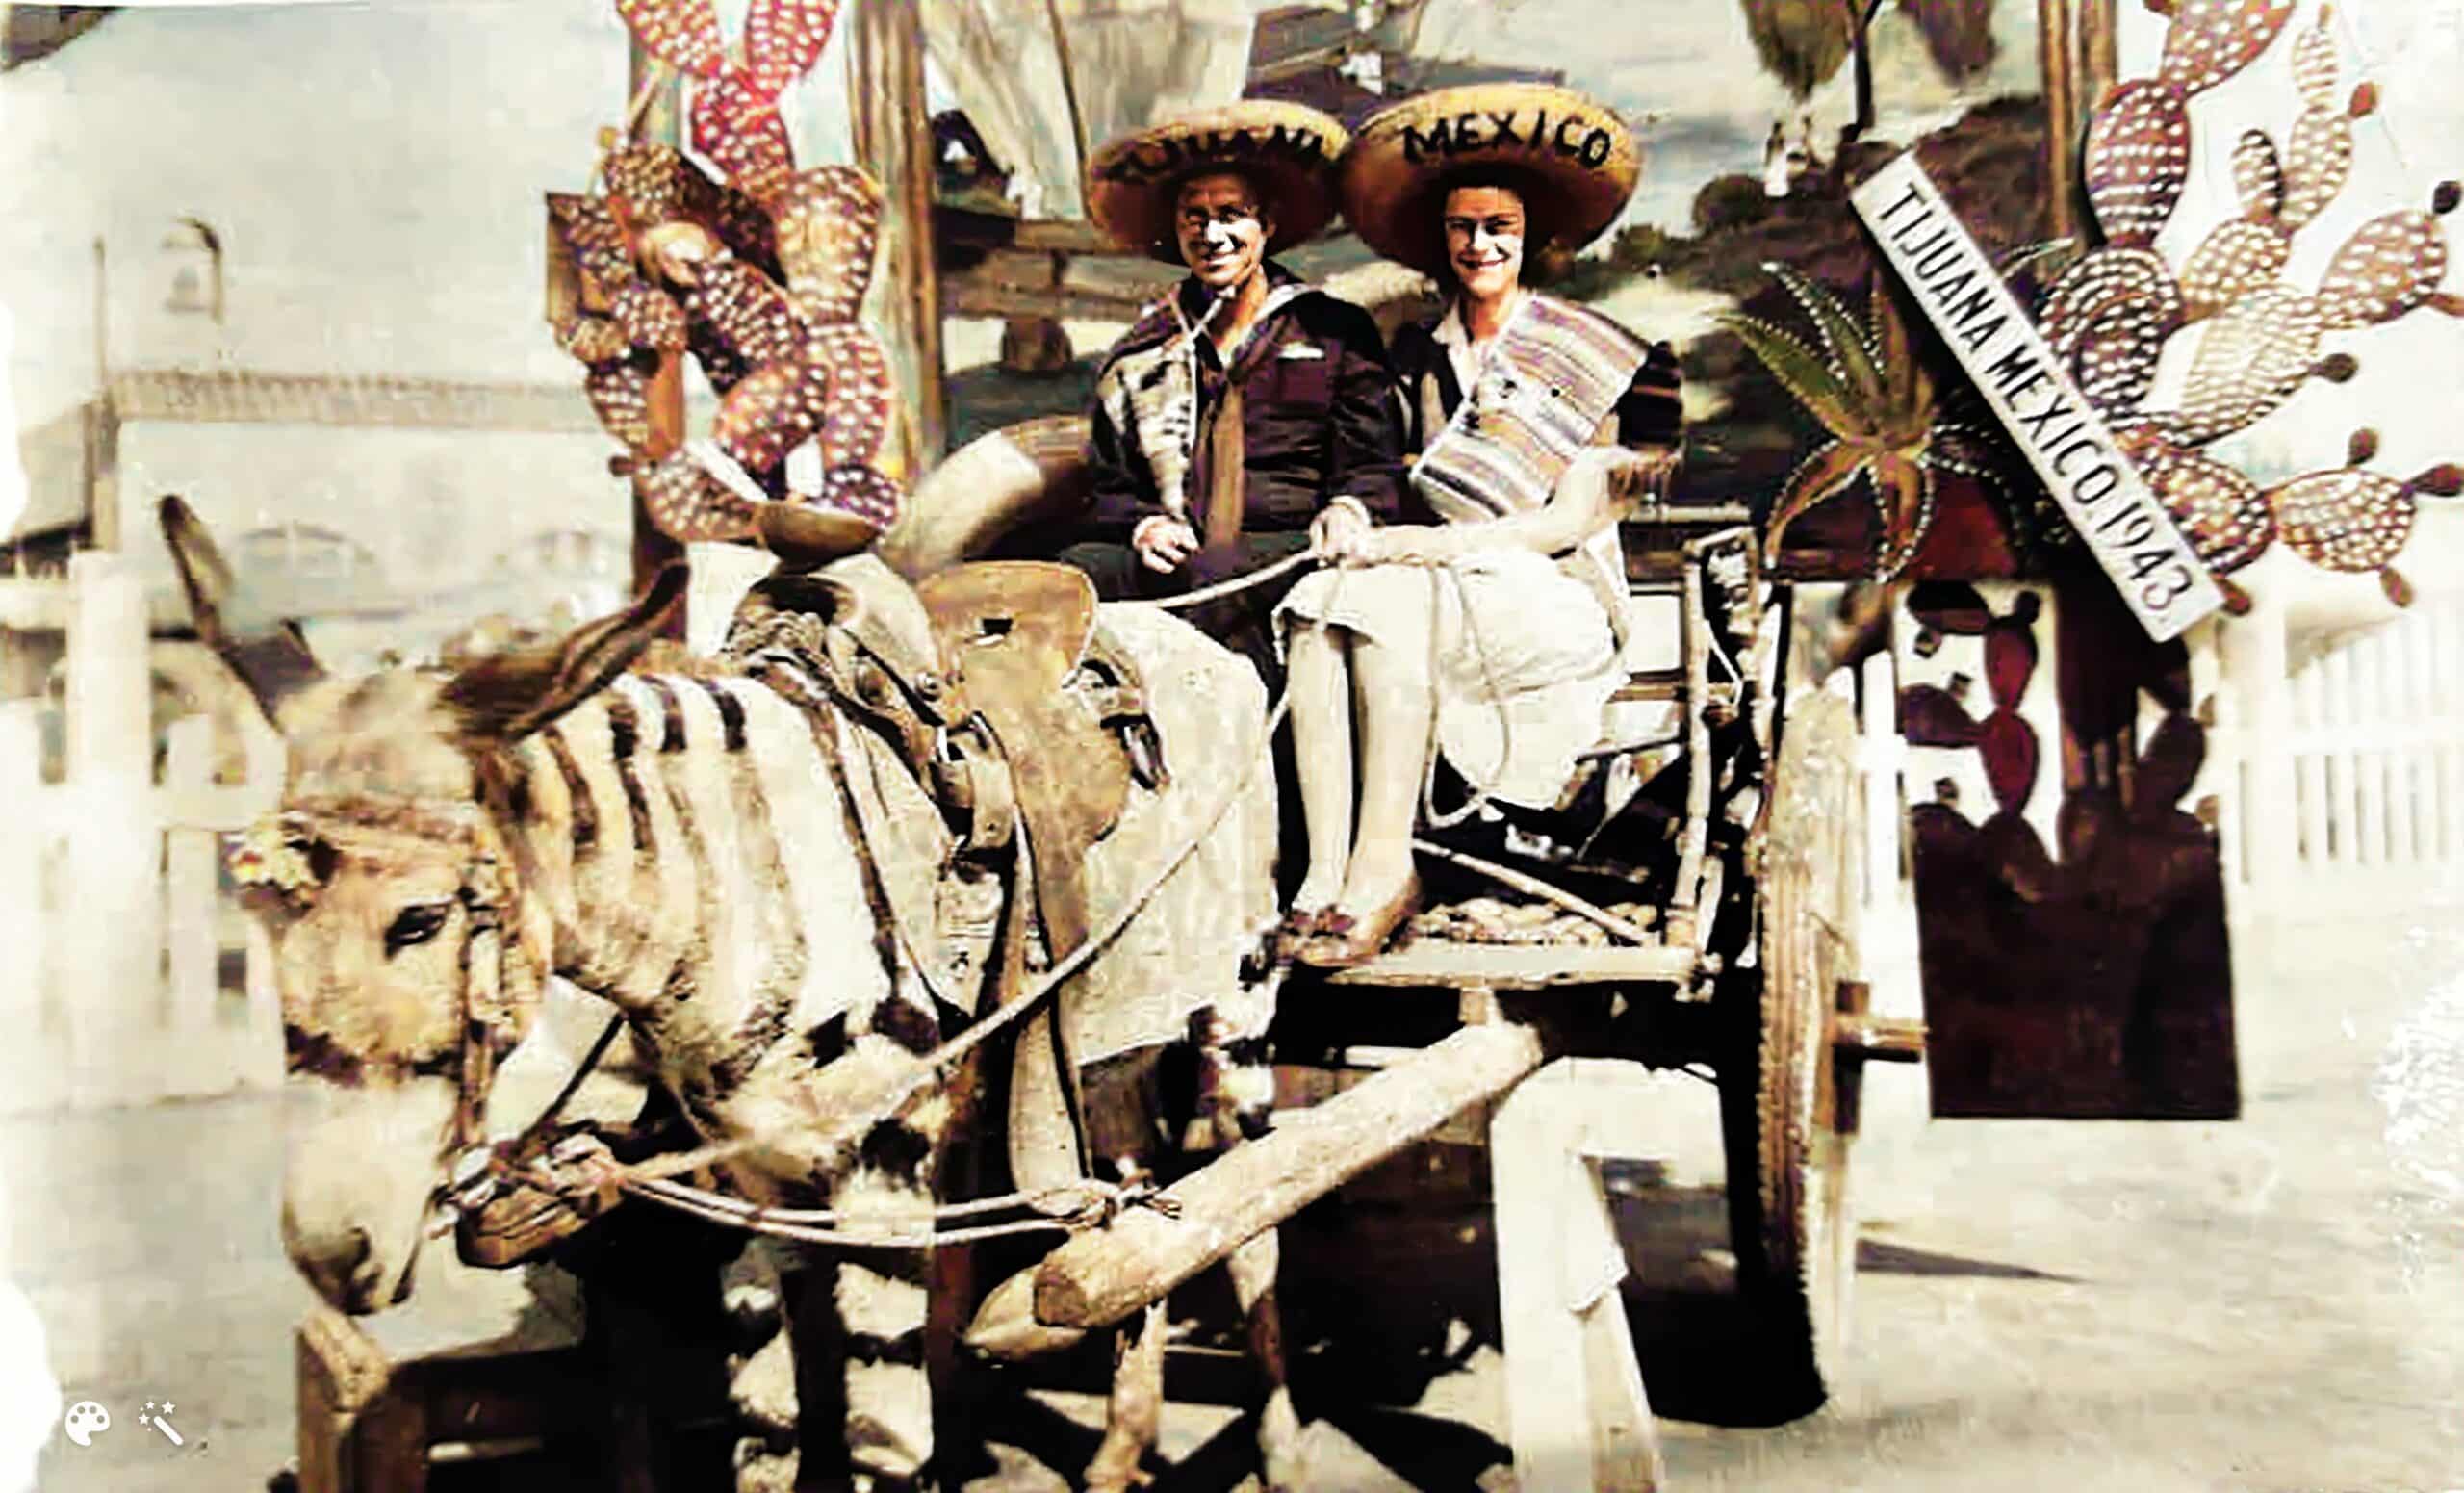 Claude und Marie in ihren Flitterwochen in Mexiko, 1943. Foto koloriert und verbessert mit MyHeritage